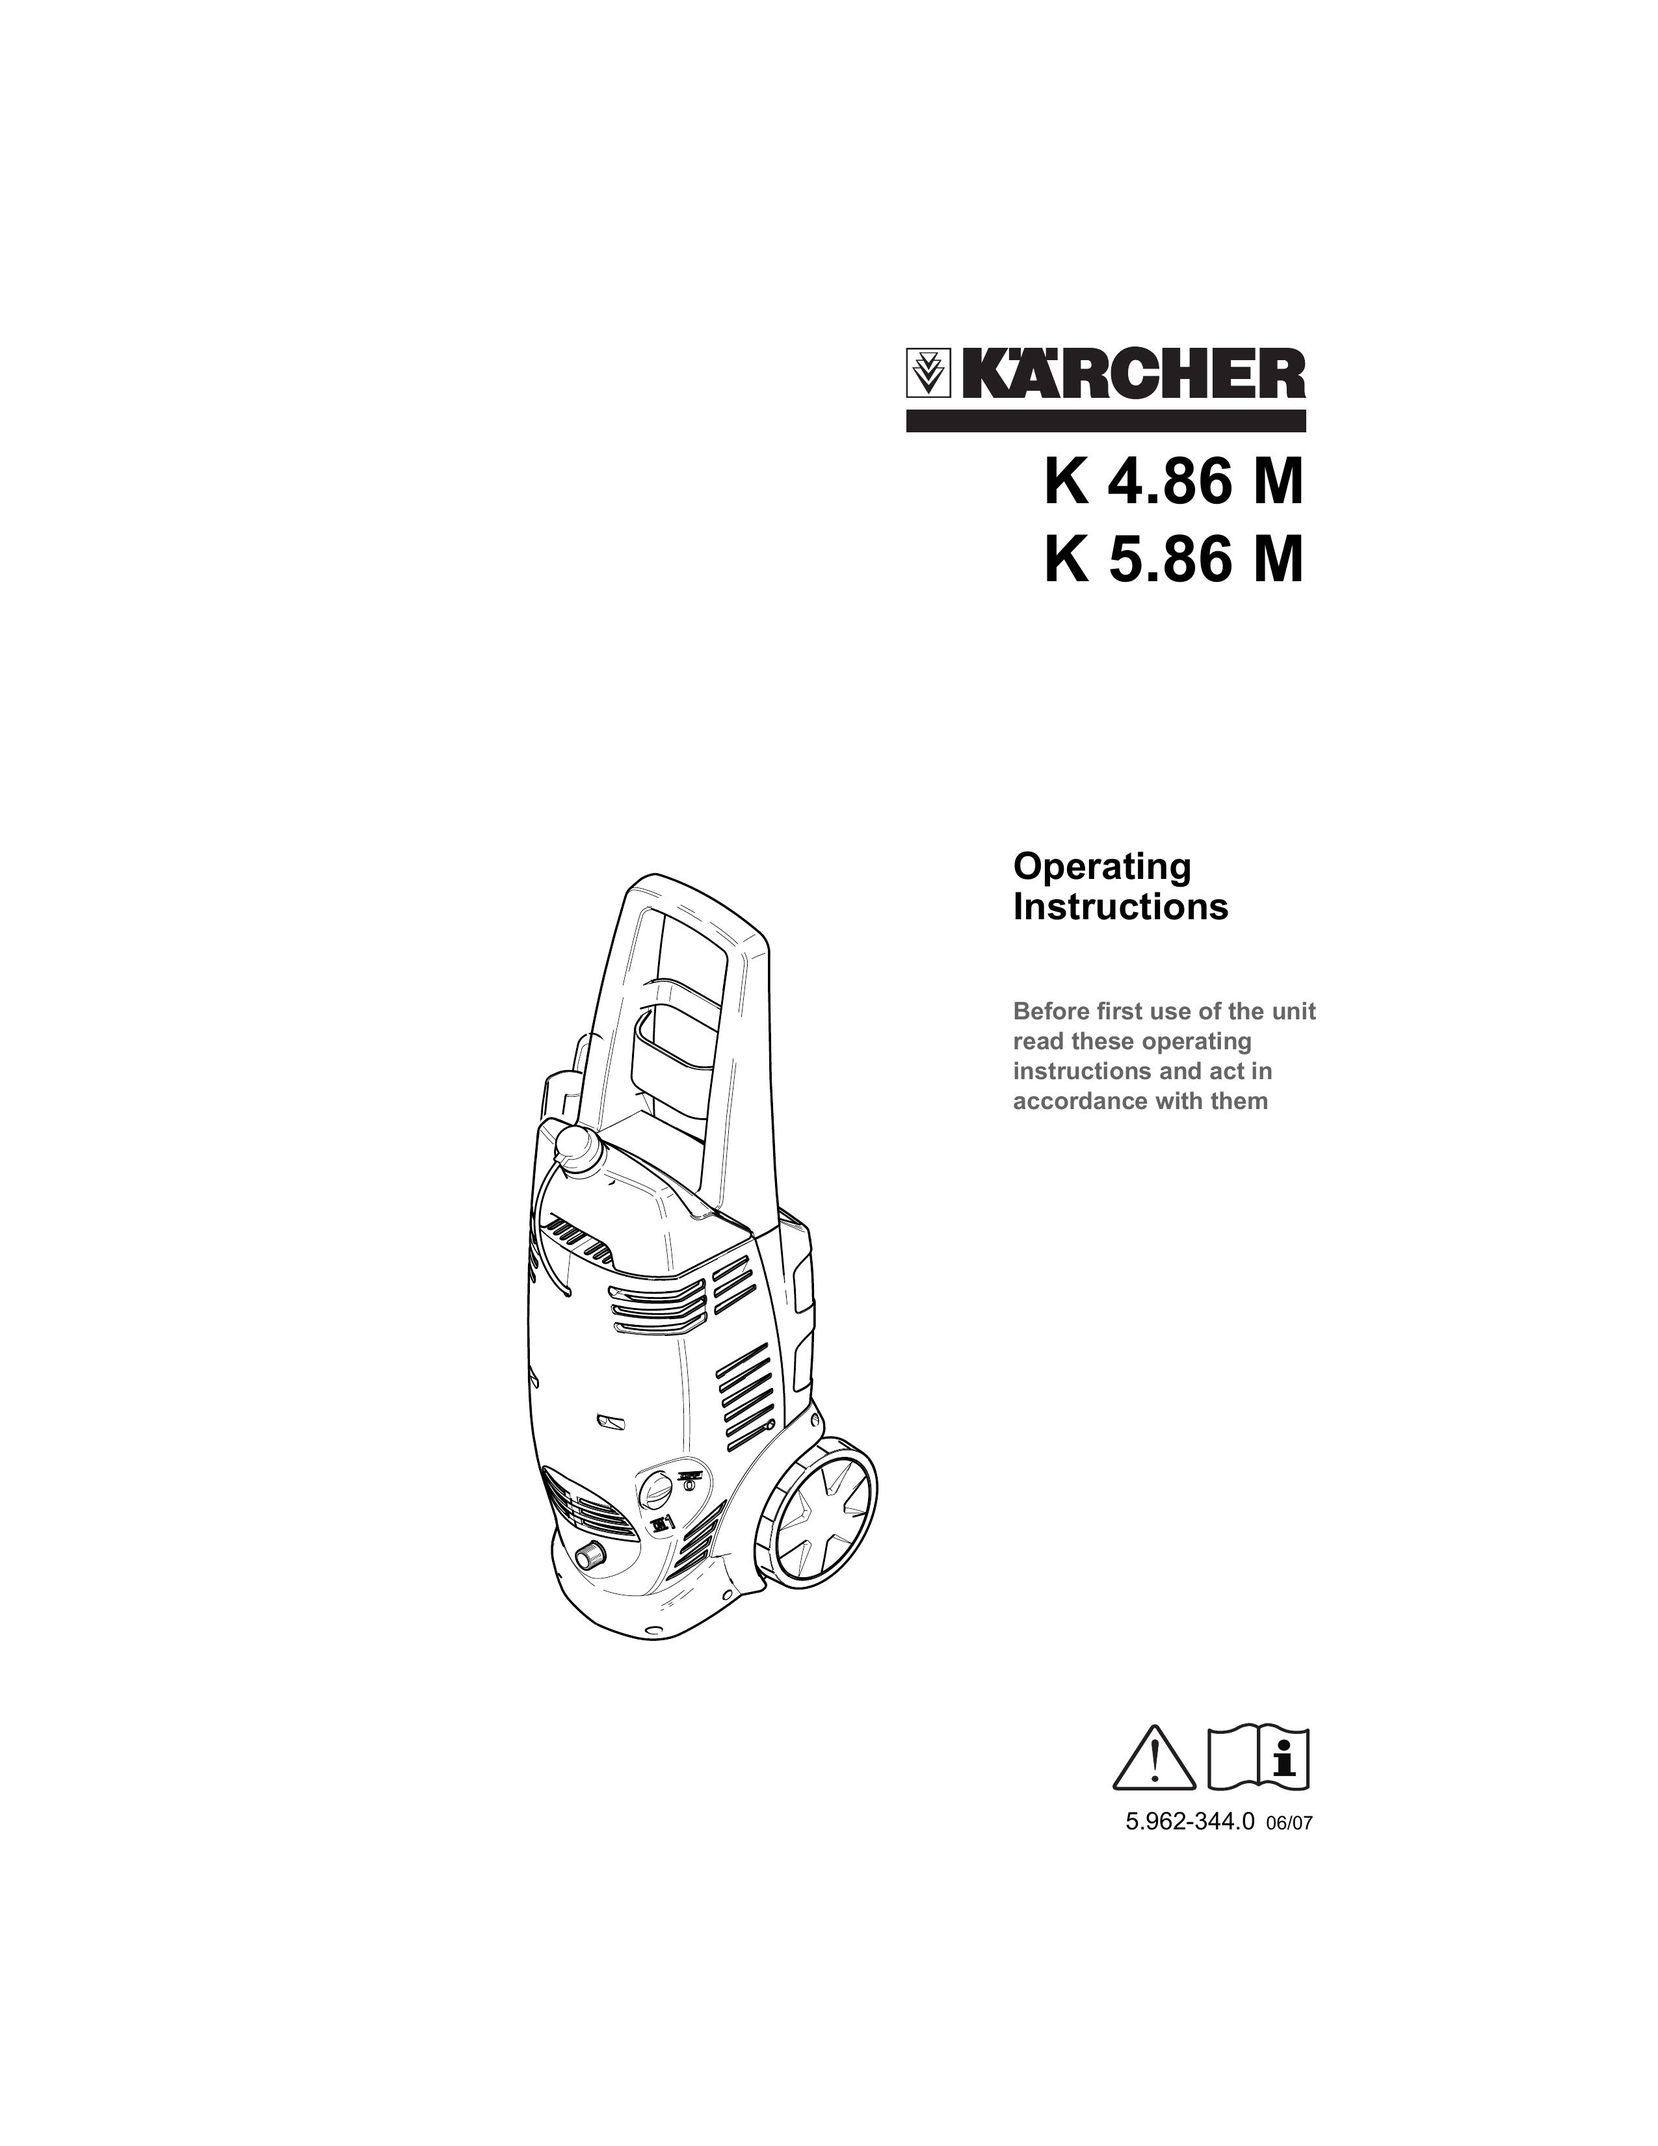 Karcher K 4.86 M Carpet Cleaner User Manual